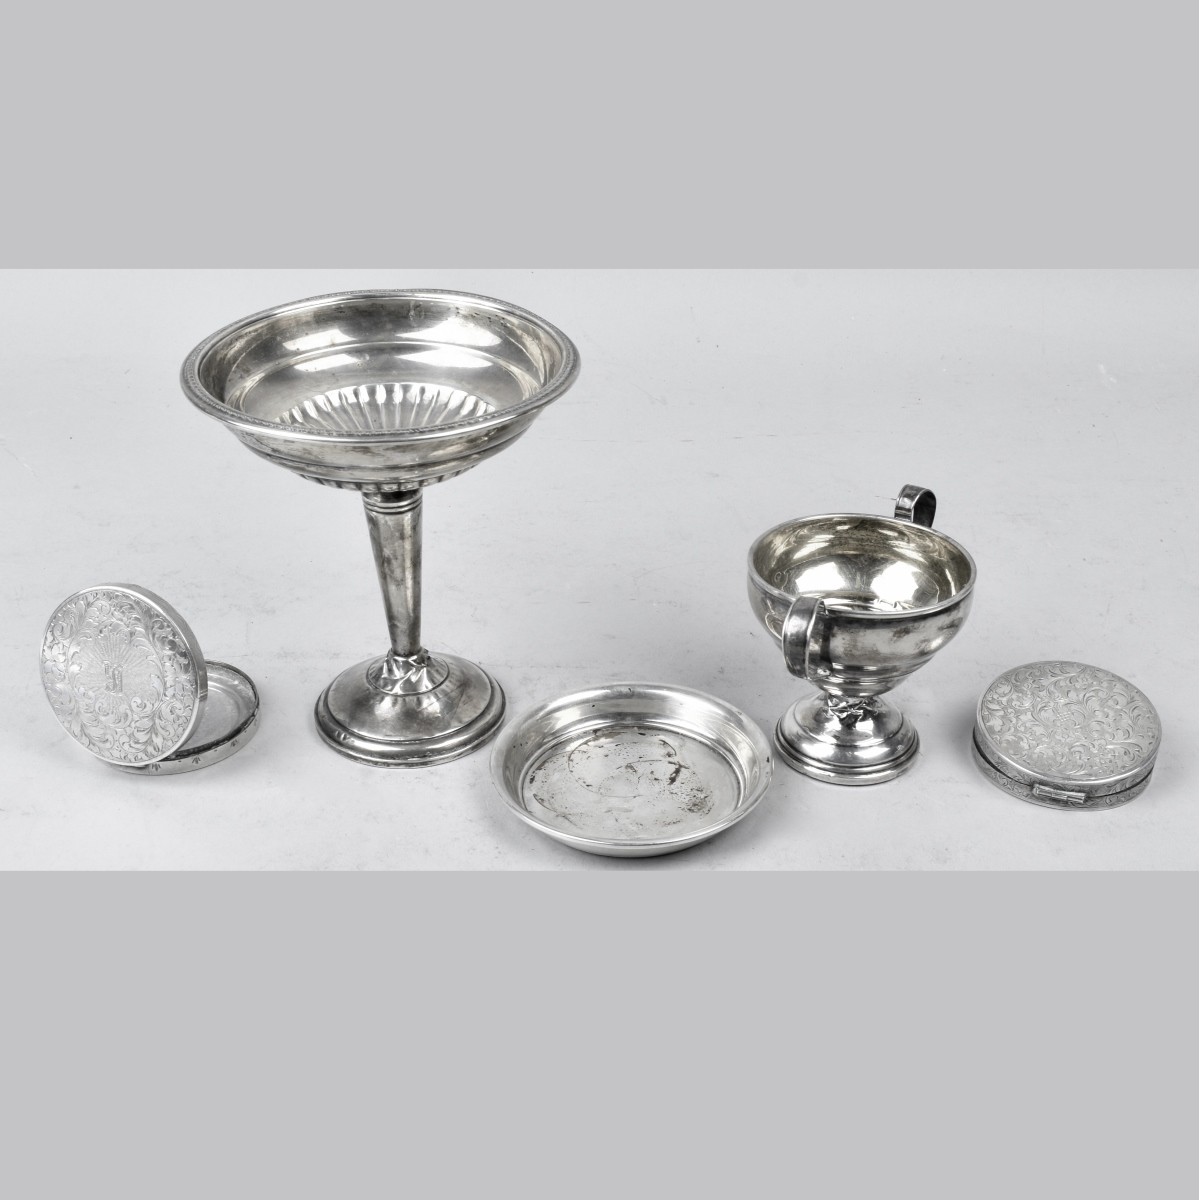 Five Sterling Silver Tableware